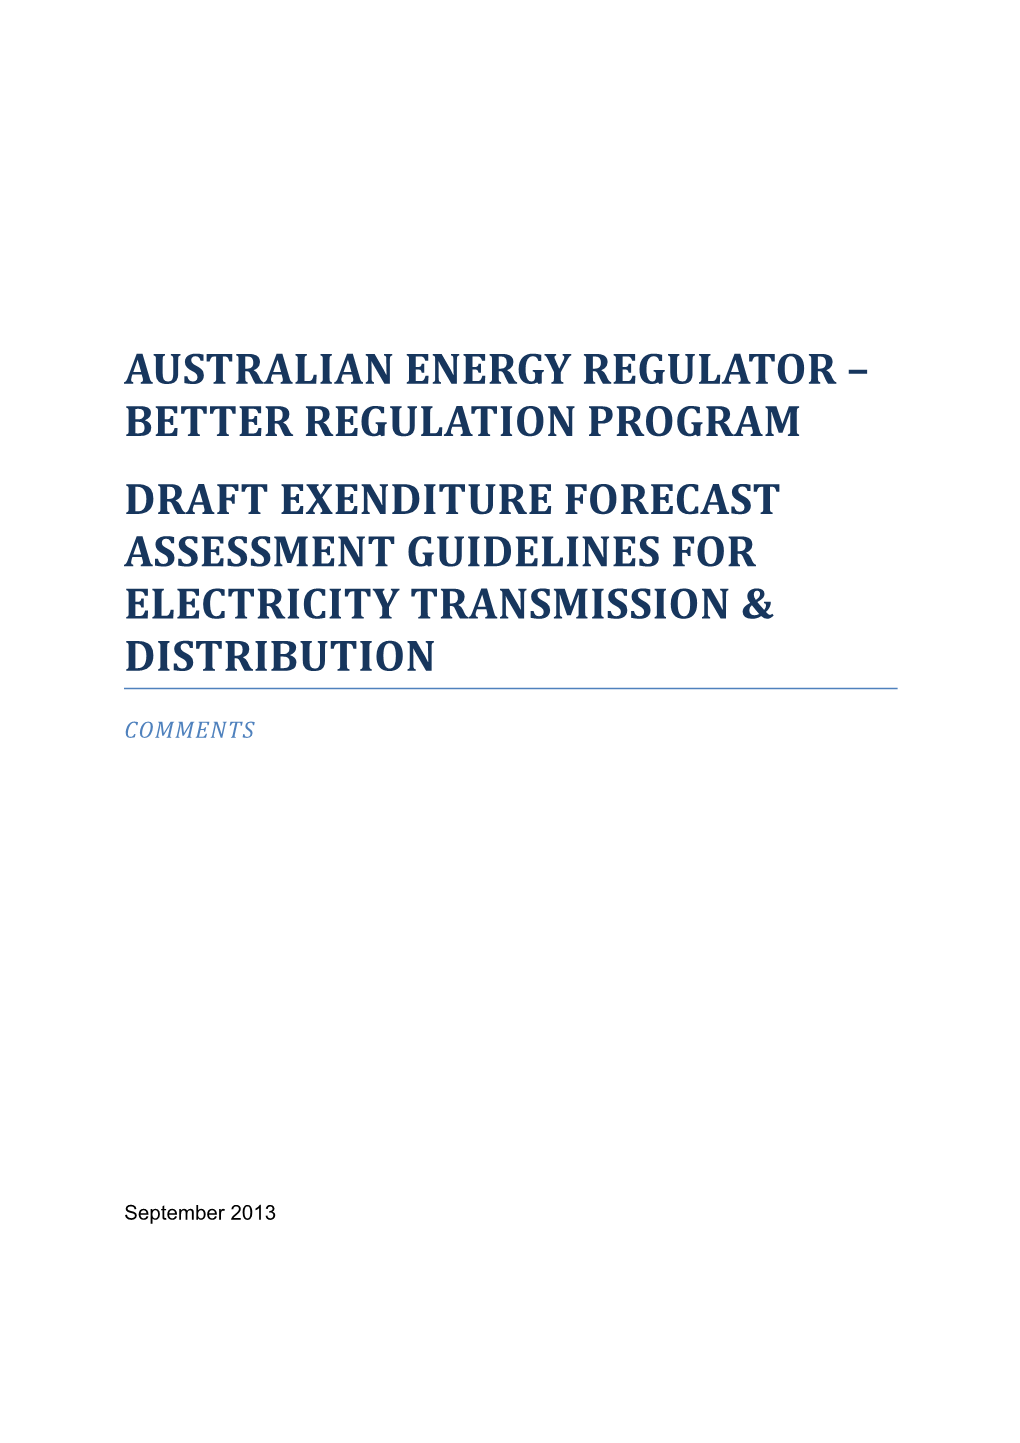 Australian Energy Regulator Better Regulation Program